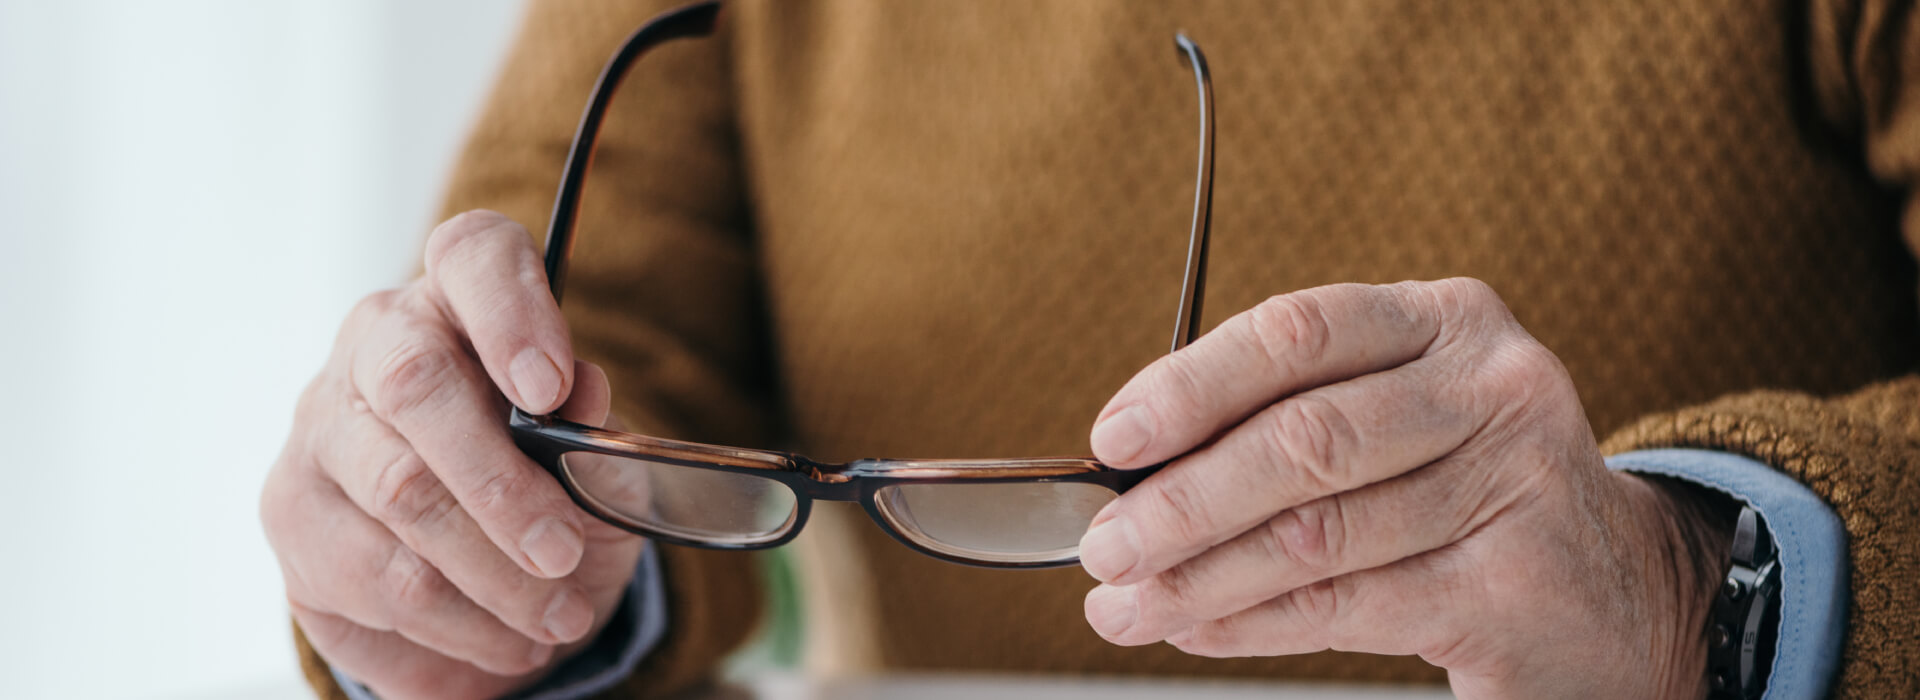 Adulto mayor toma unas gafas en sus manos